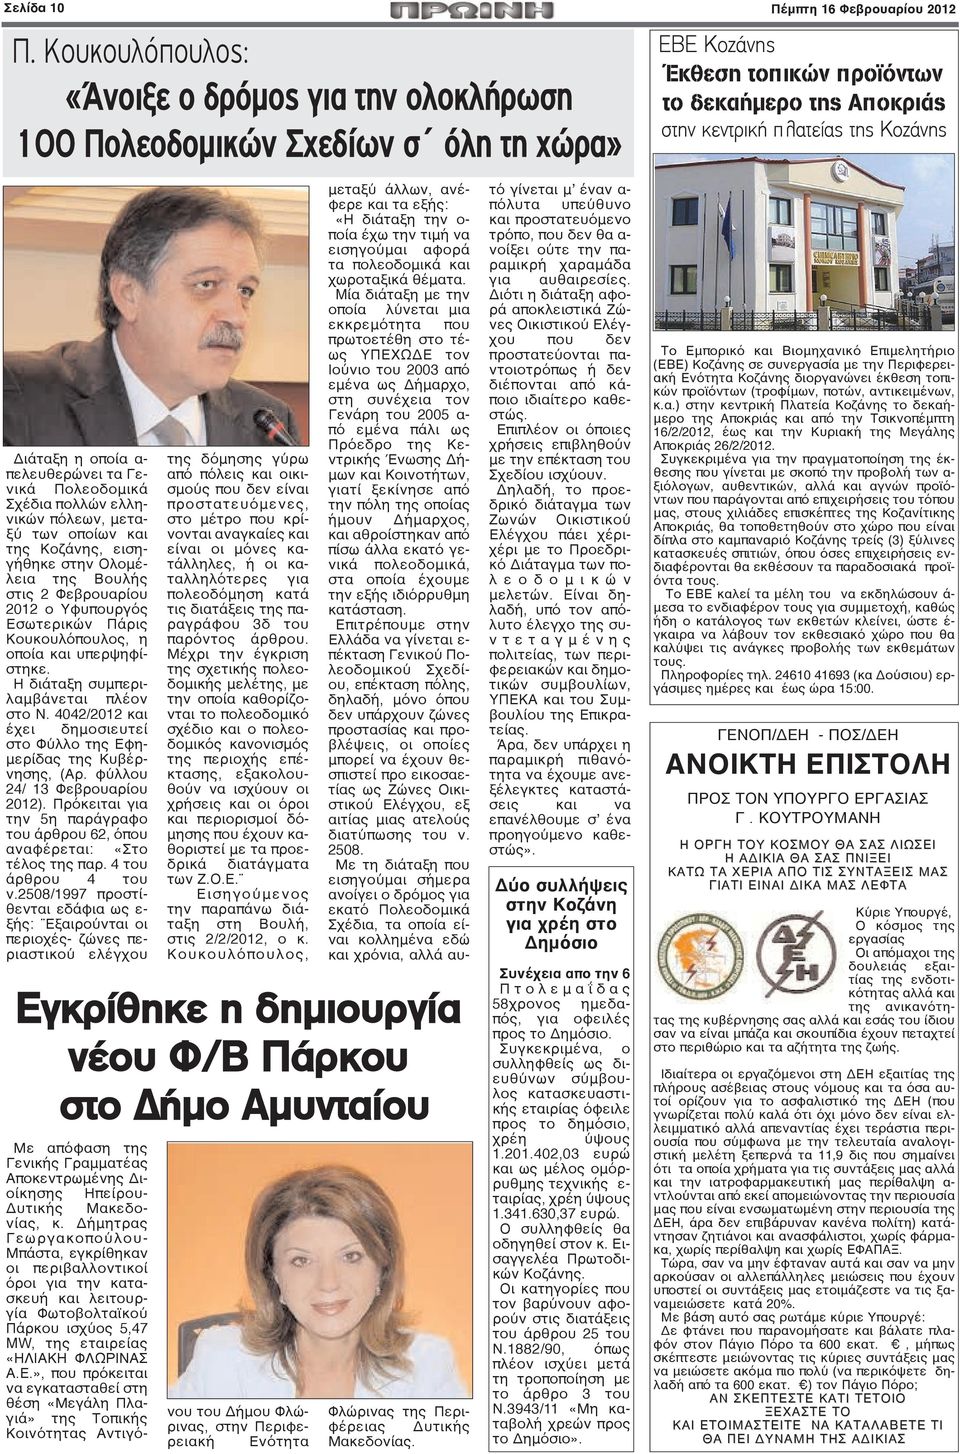 οποία α- πελευθερώνει τα Γενικά Πολεοδομικά Σχέδια πολλών ελληνικών πόλεων, μεταξύ των οποίων και της Κοζάνης, εισηγήθηκε στην Ολομέλεια της Βουλής στις 2 Φεβρουαρίου 2012 ο Υφυπουργός Εσωτερικών